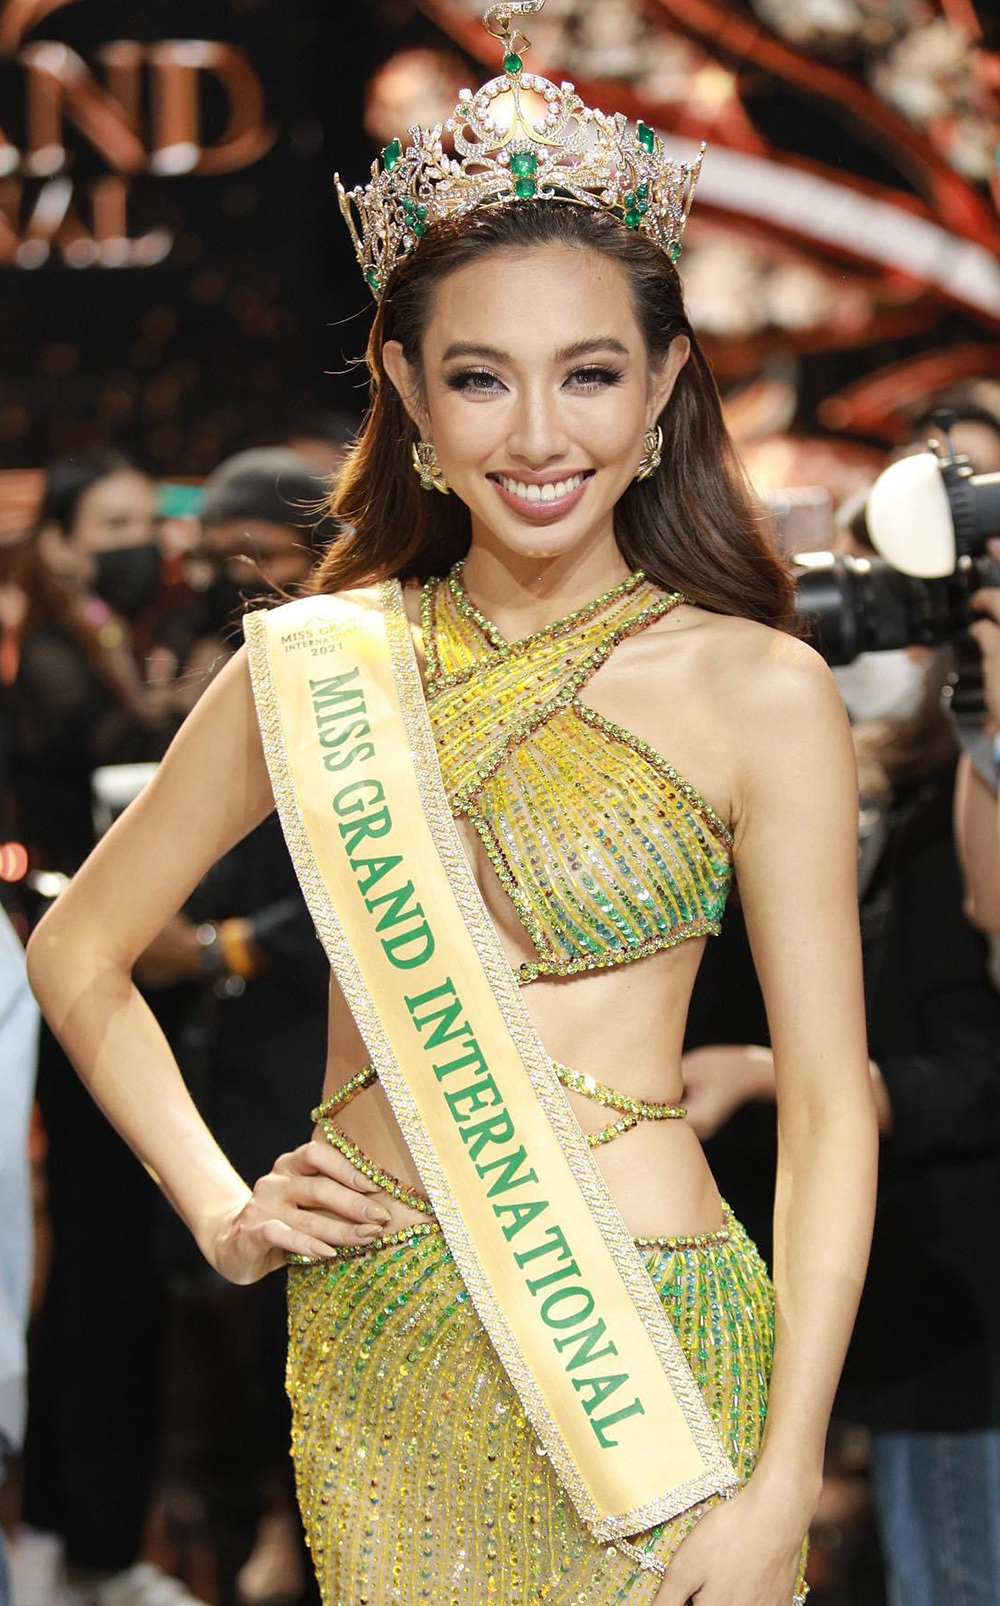 Việt Nam cử đại diện tham dự Miss Grand International liên tục nhiều năm qua. Trên truyền 